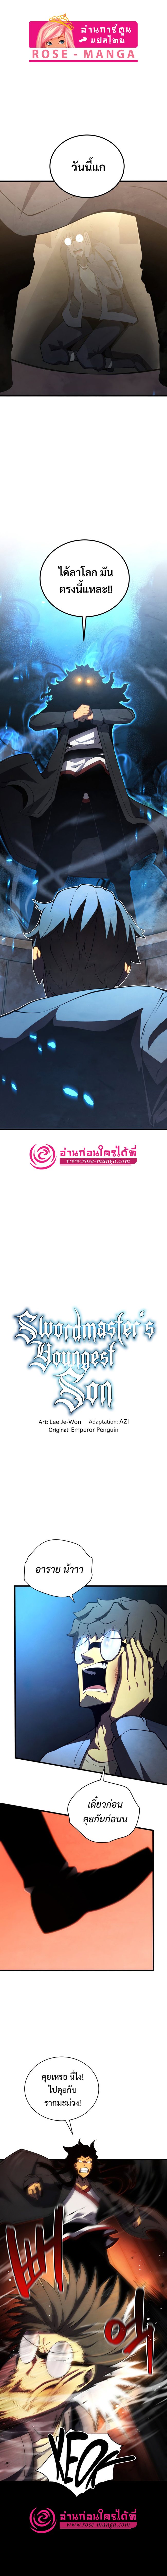 Swordmaster’s Youngest Son 40 01